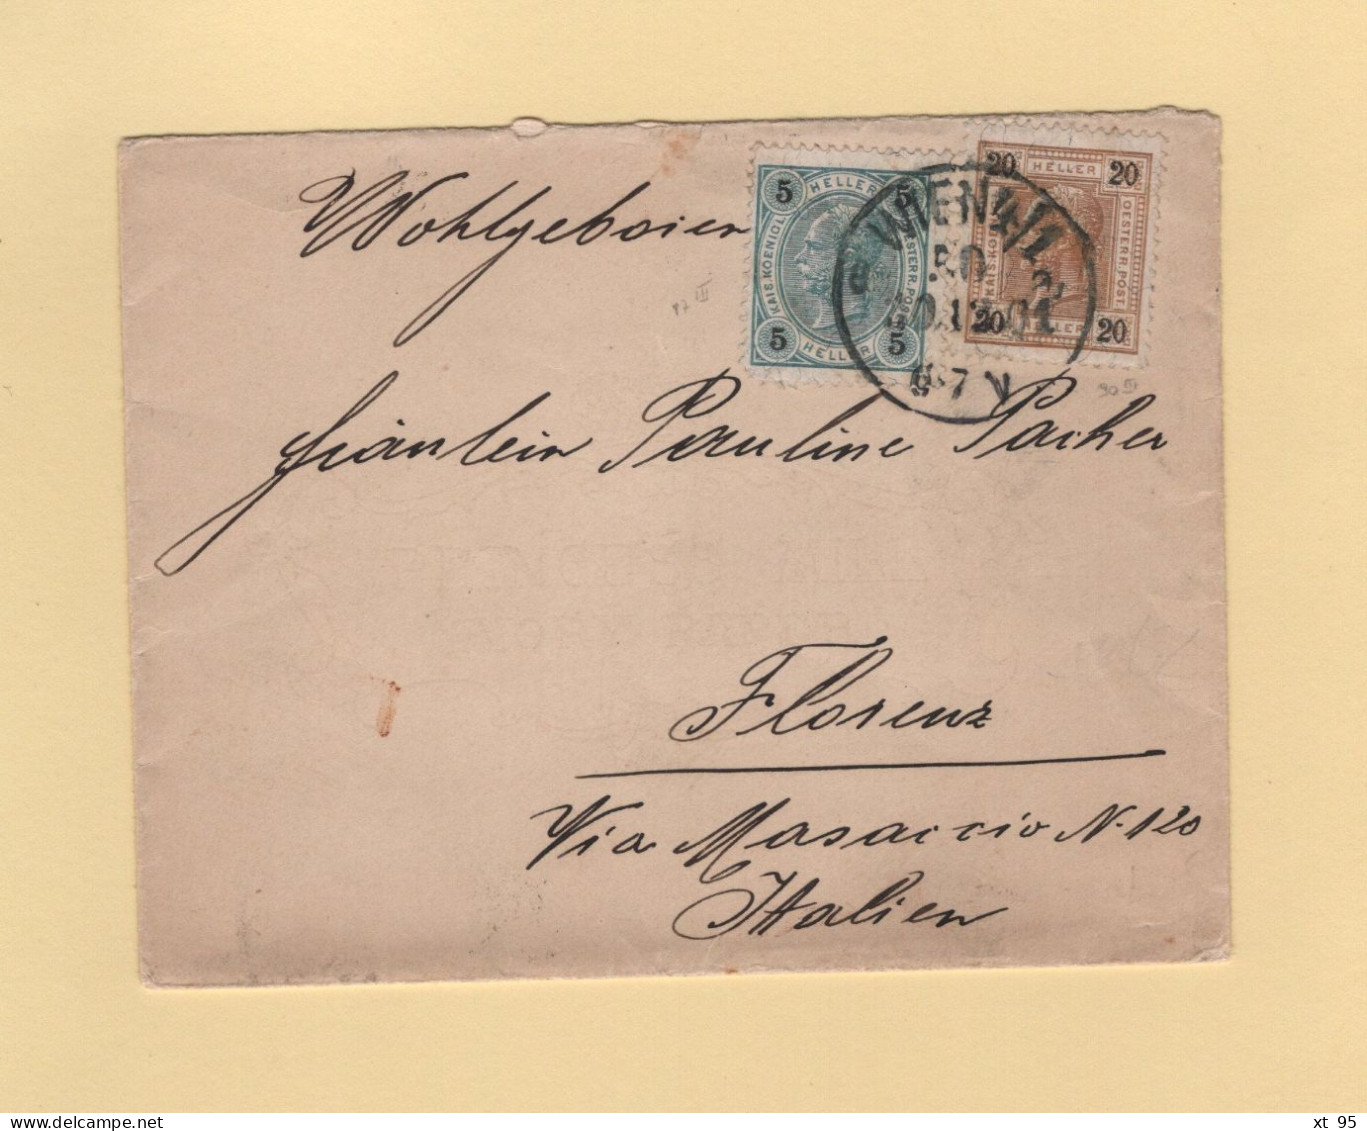 Autriche - Wien - 1901 - Destination Italie - Lettres & Documents